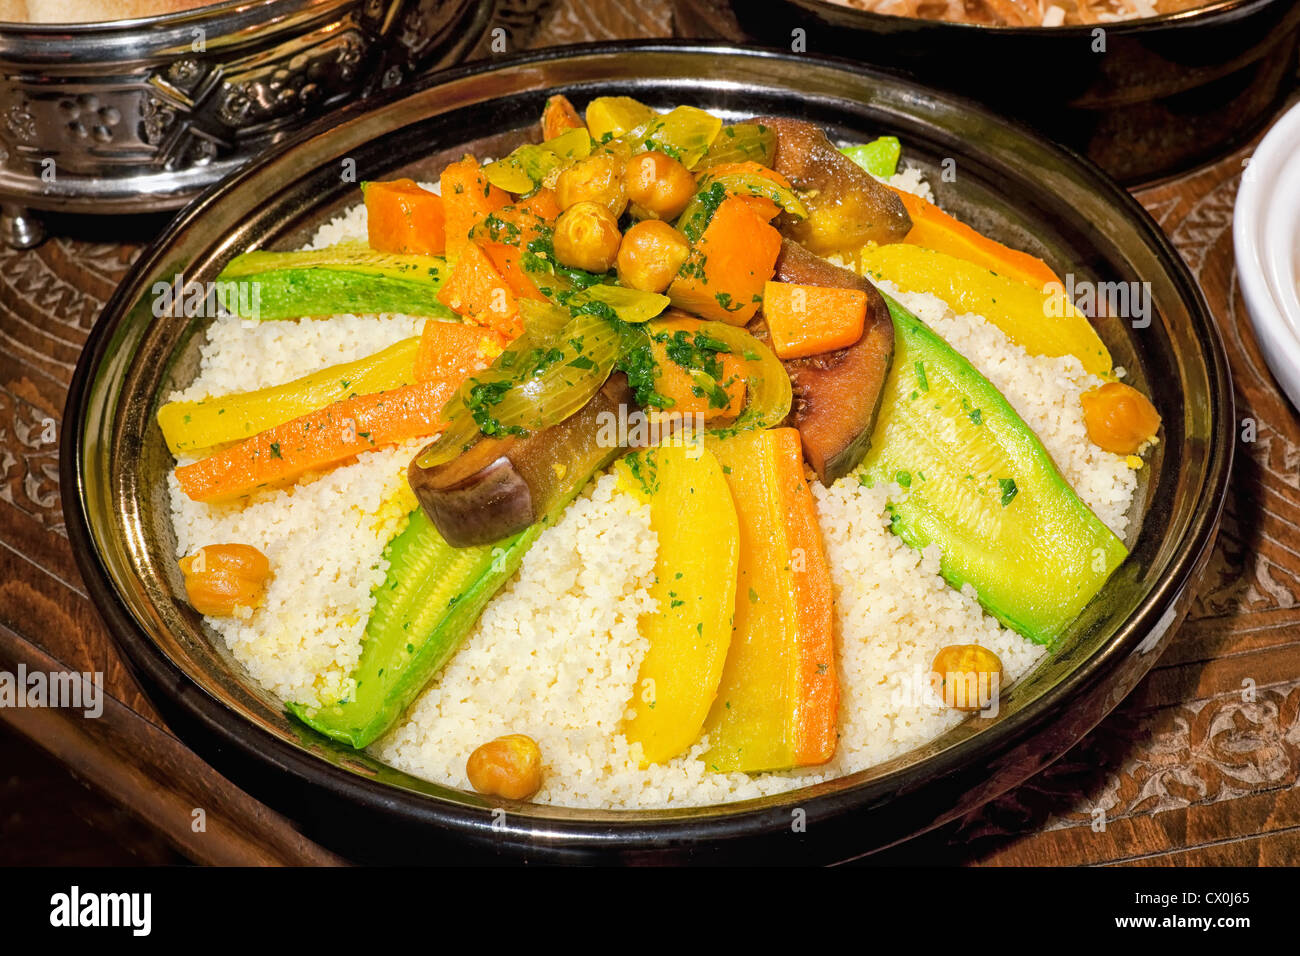 Marokkanischer Couscous Essen Stockfotografie - Alamy